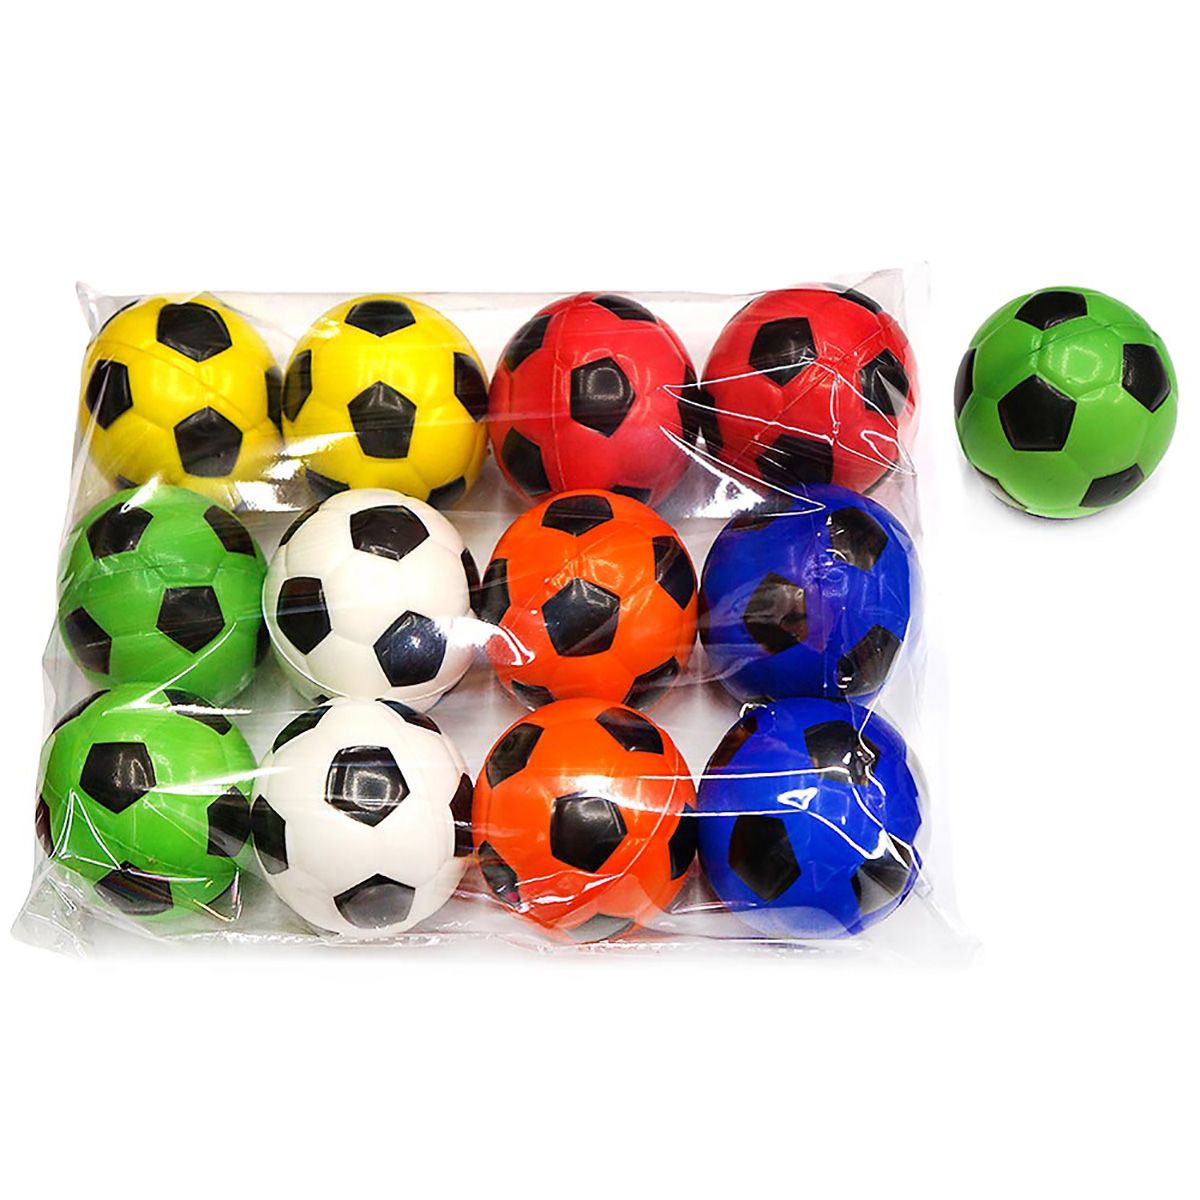 Мяч 200мм Футбол (красный,желтый,зеленый)